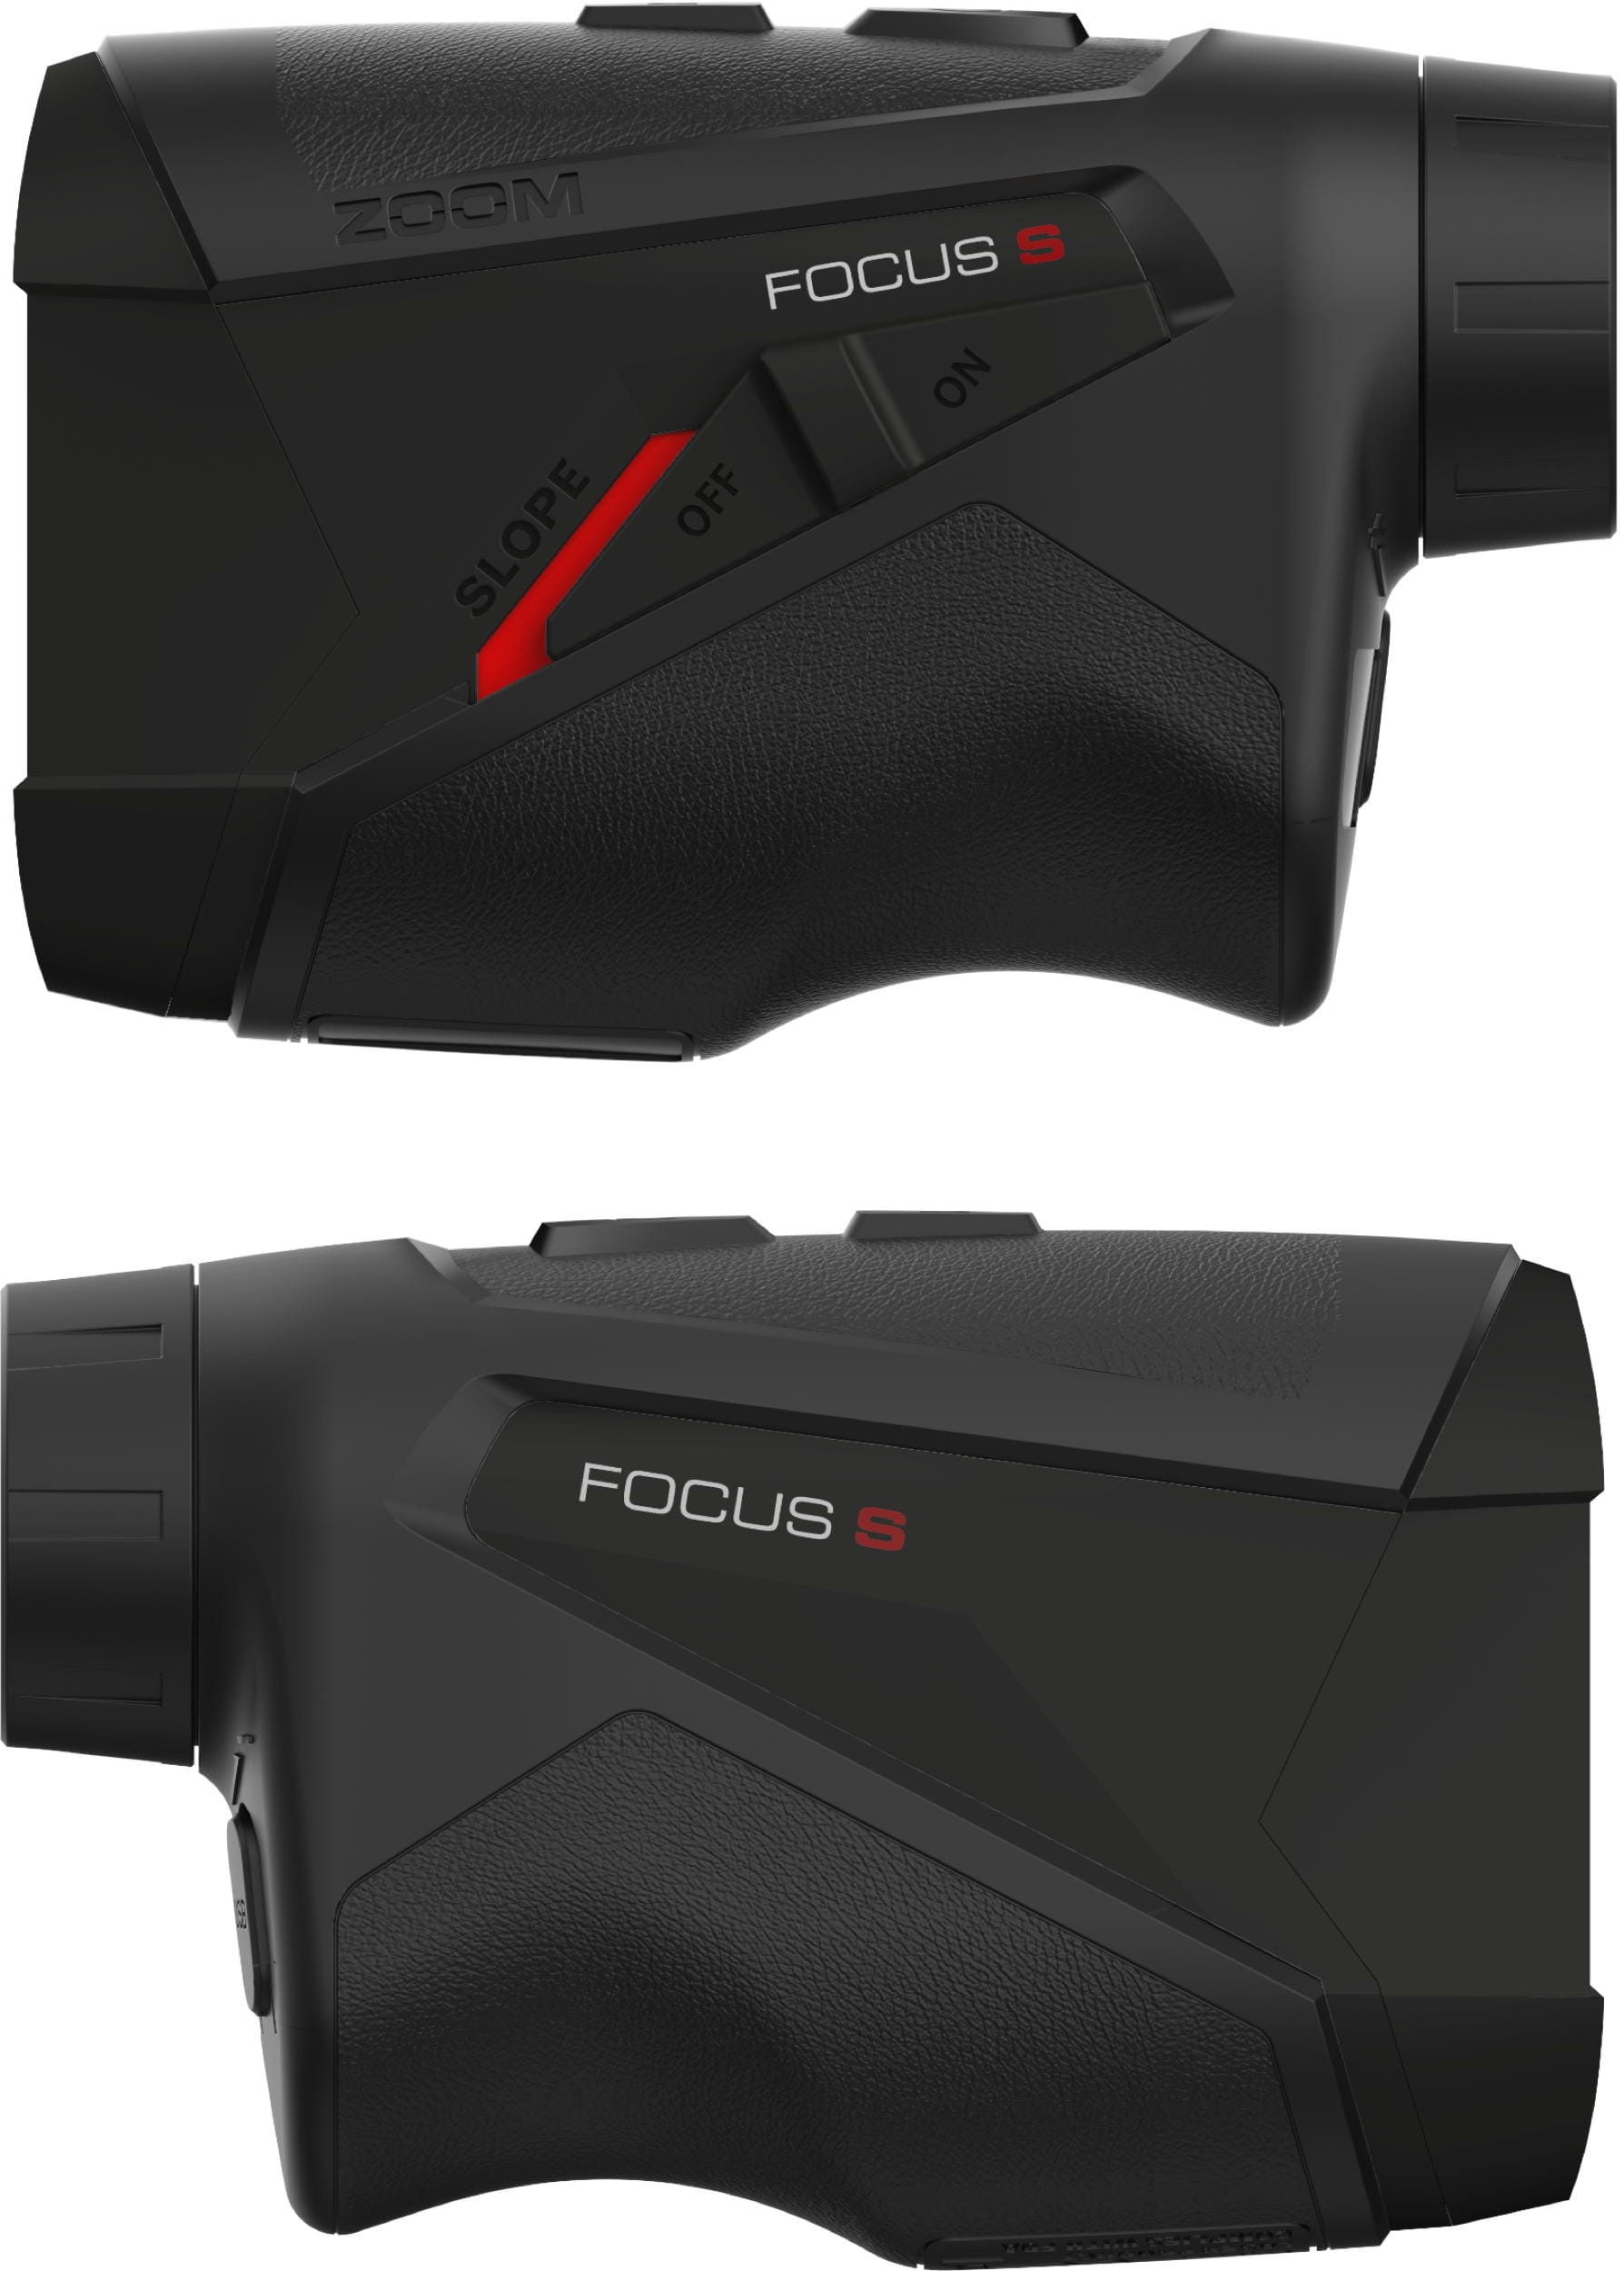 Zoom Focus S Laser